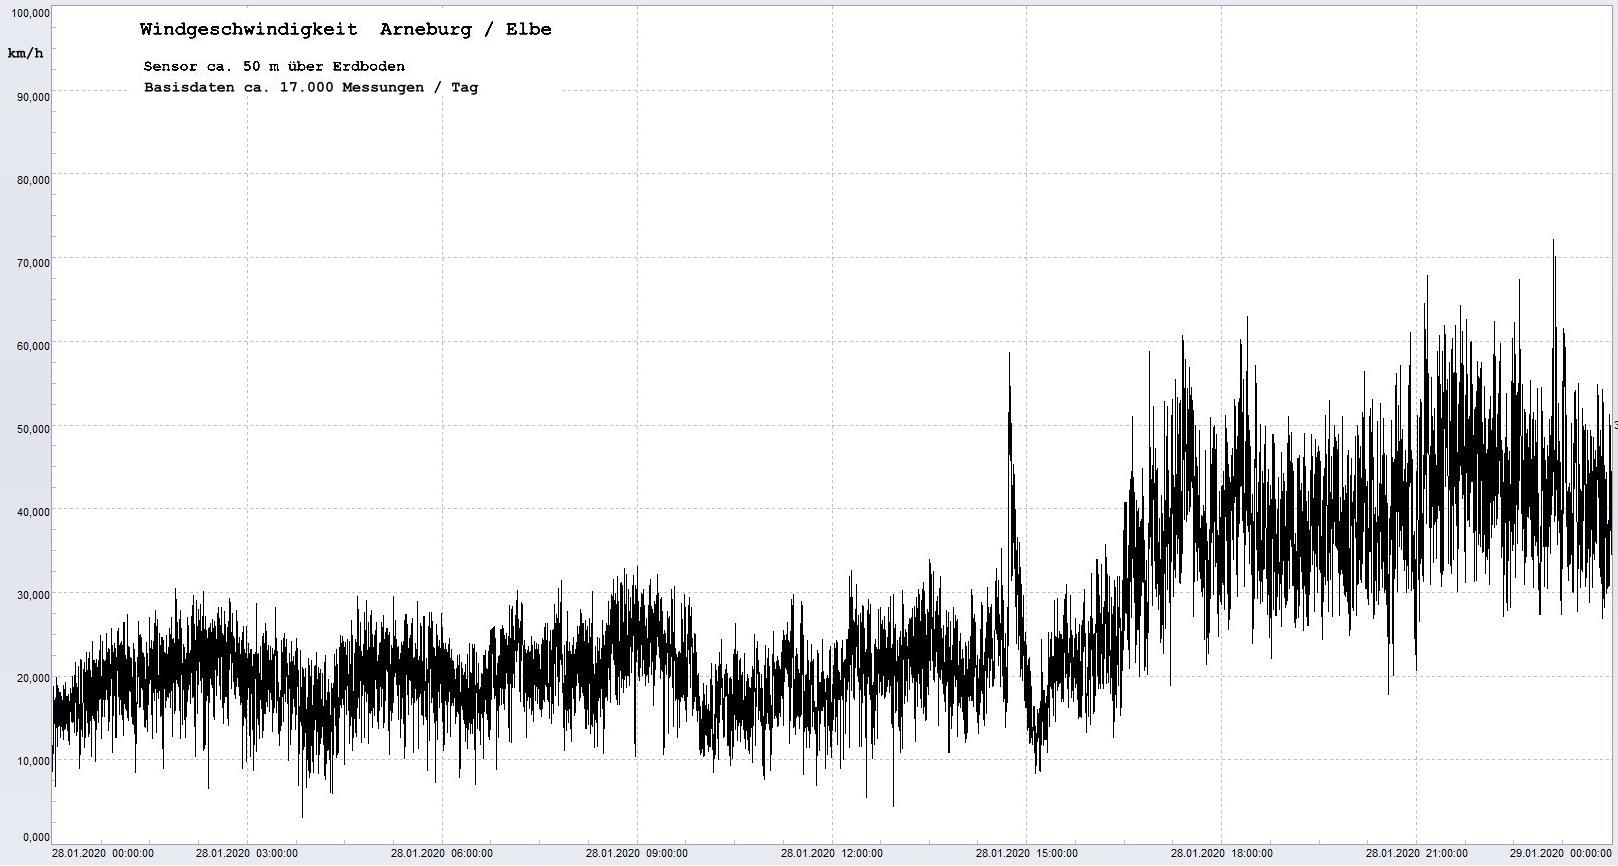 Arneburg Winddaten 28.01.2020, 
  Sensor auf Gebude, ca. 50 m ber Erdboden, 5s-Aufzeichnung